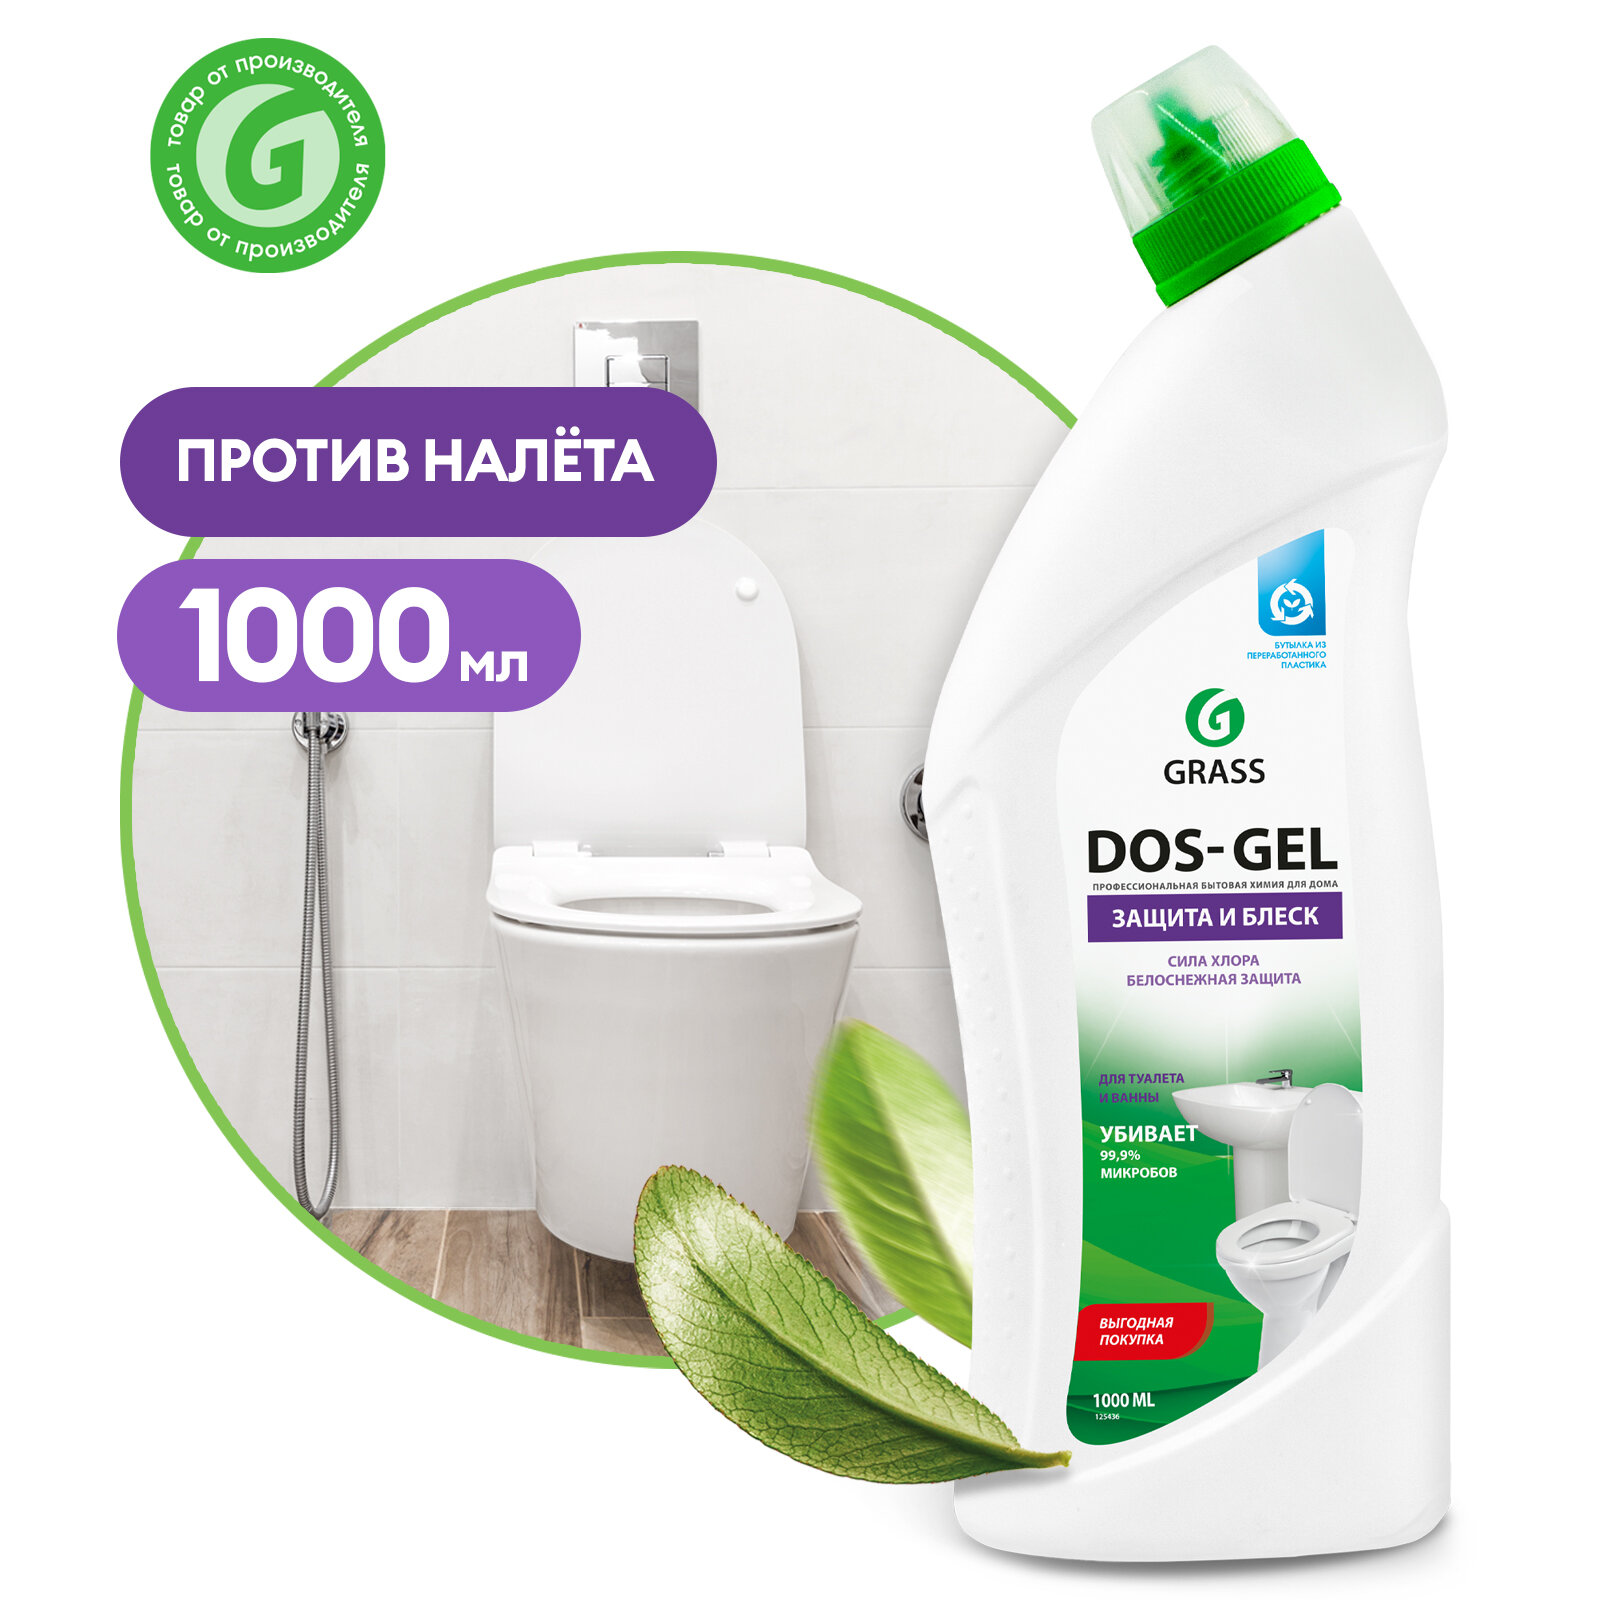 Универсальный набор Grass для уборки ванной и туалета Dos-gel 750мл, Gloss 600мл, Digger-gel 750мл, WC-gel 750мл